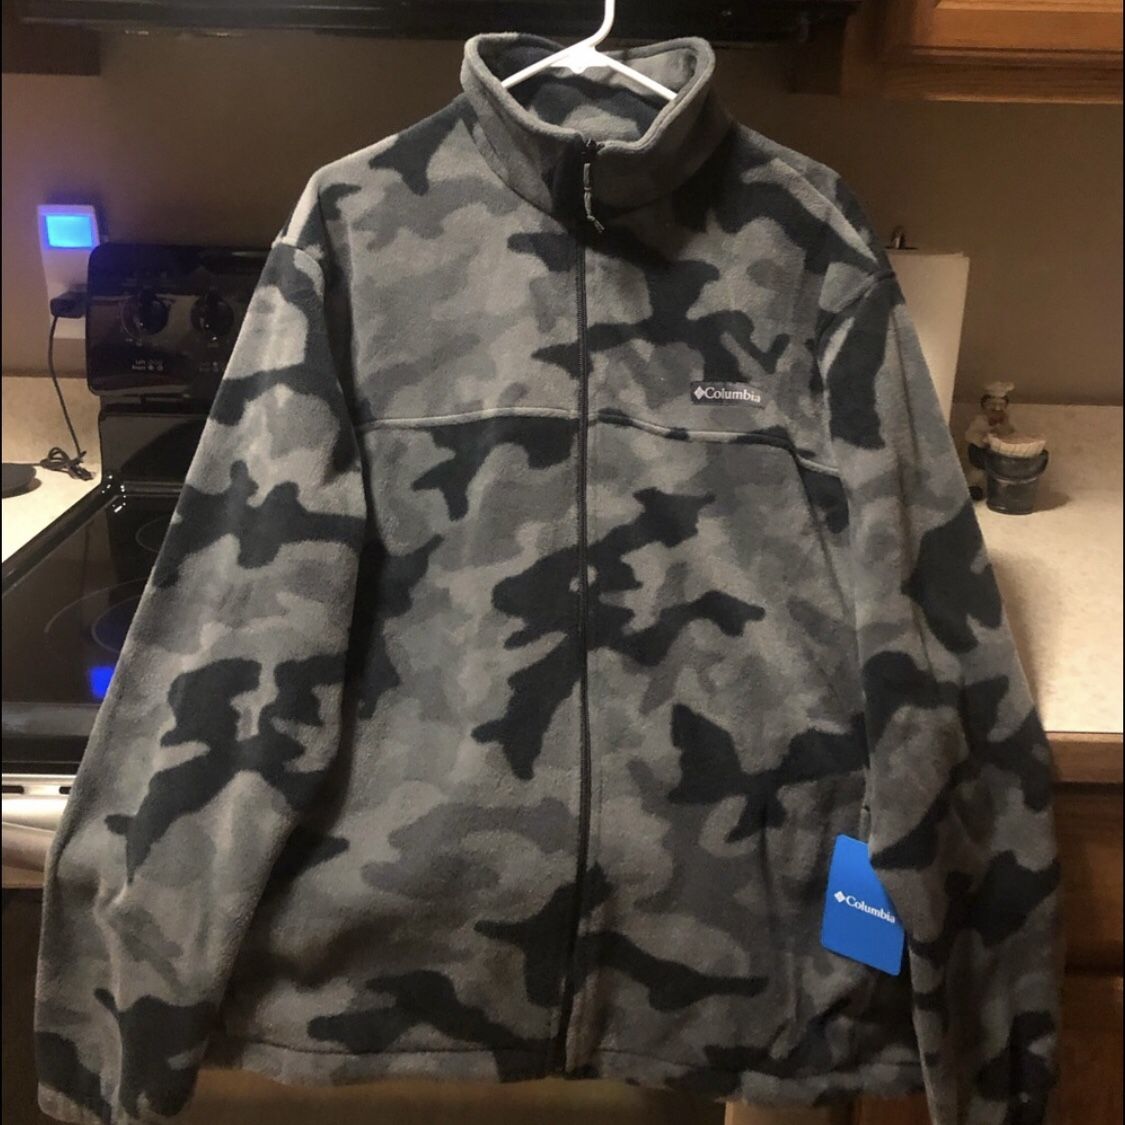 Men’s New Camouflage Jacket Size Medium